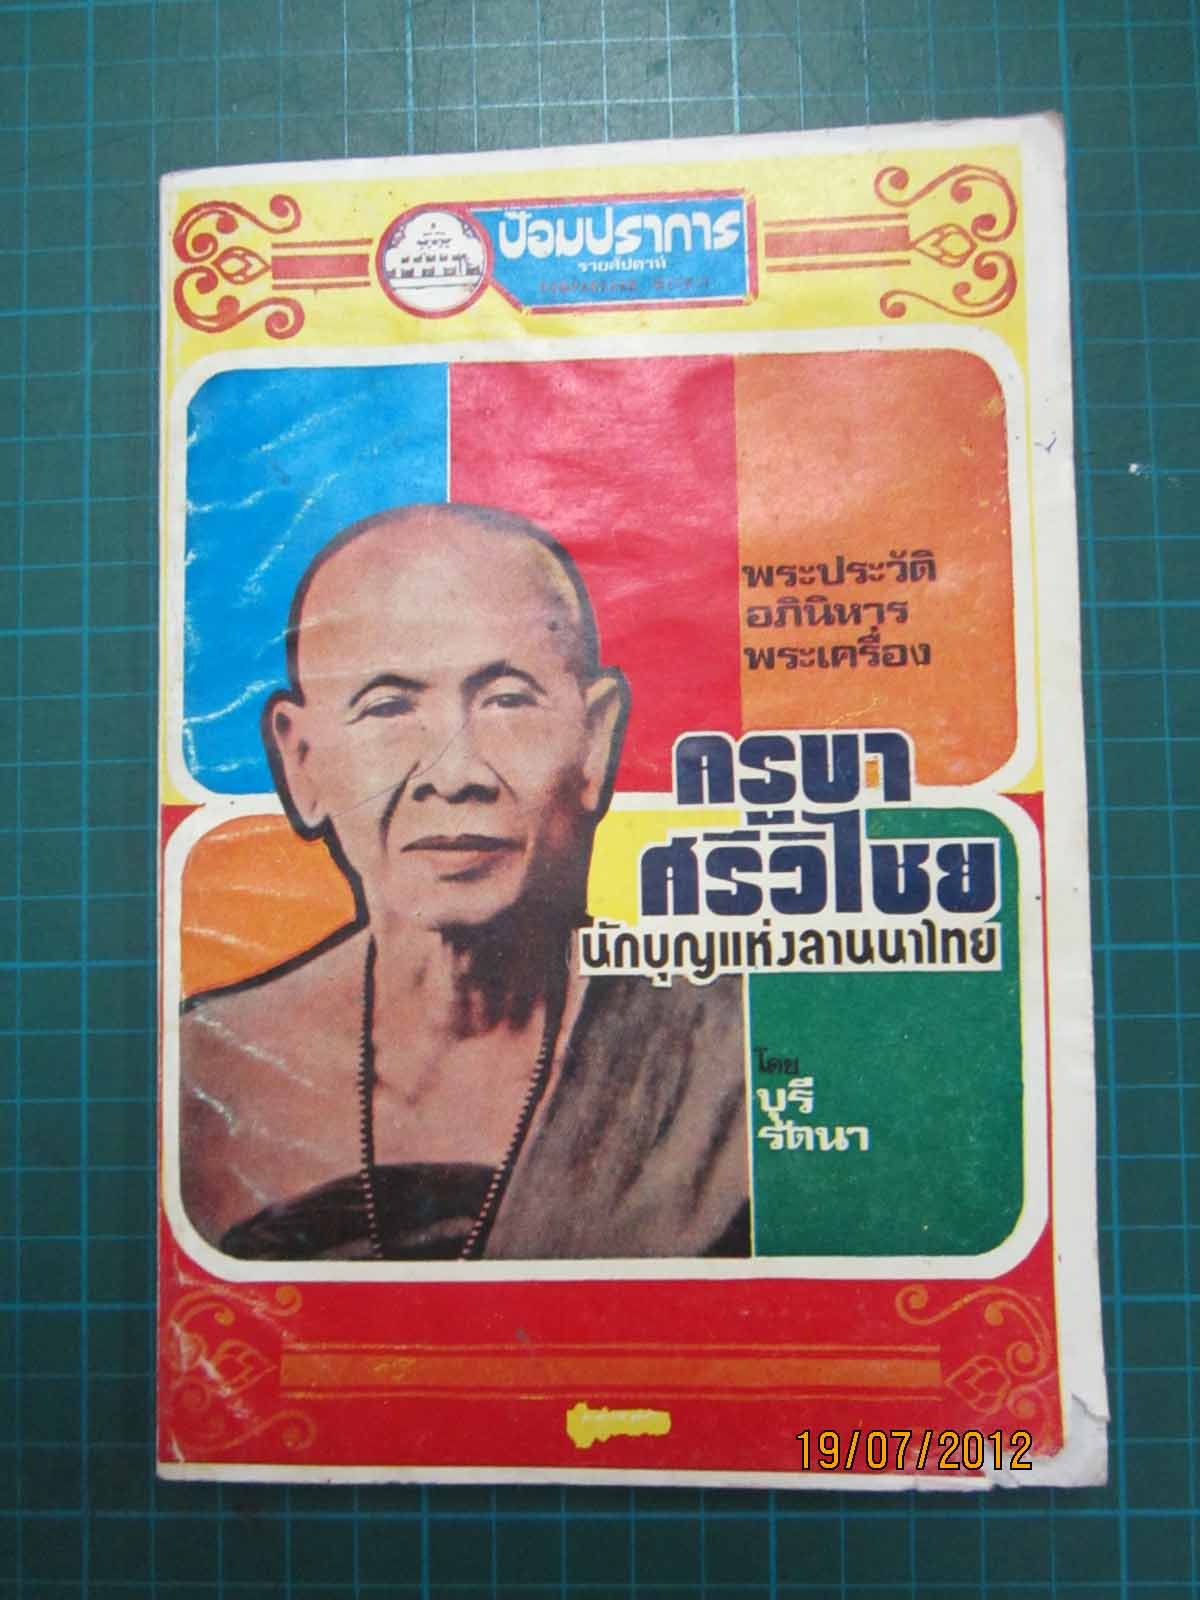 หนังสือเก่าพระประวัติ อภินิหาร พระเครื่อง ครูบาศรีวิไชย นักบุญแห่งลานนาไทย น่าอ่านมากครับ  500 บาทคร